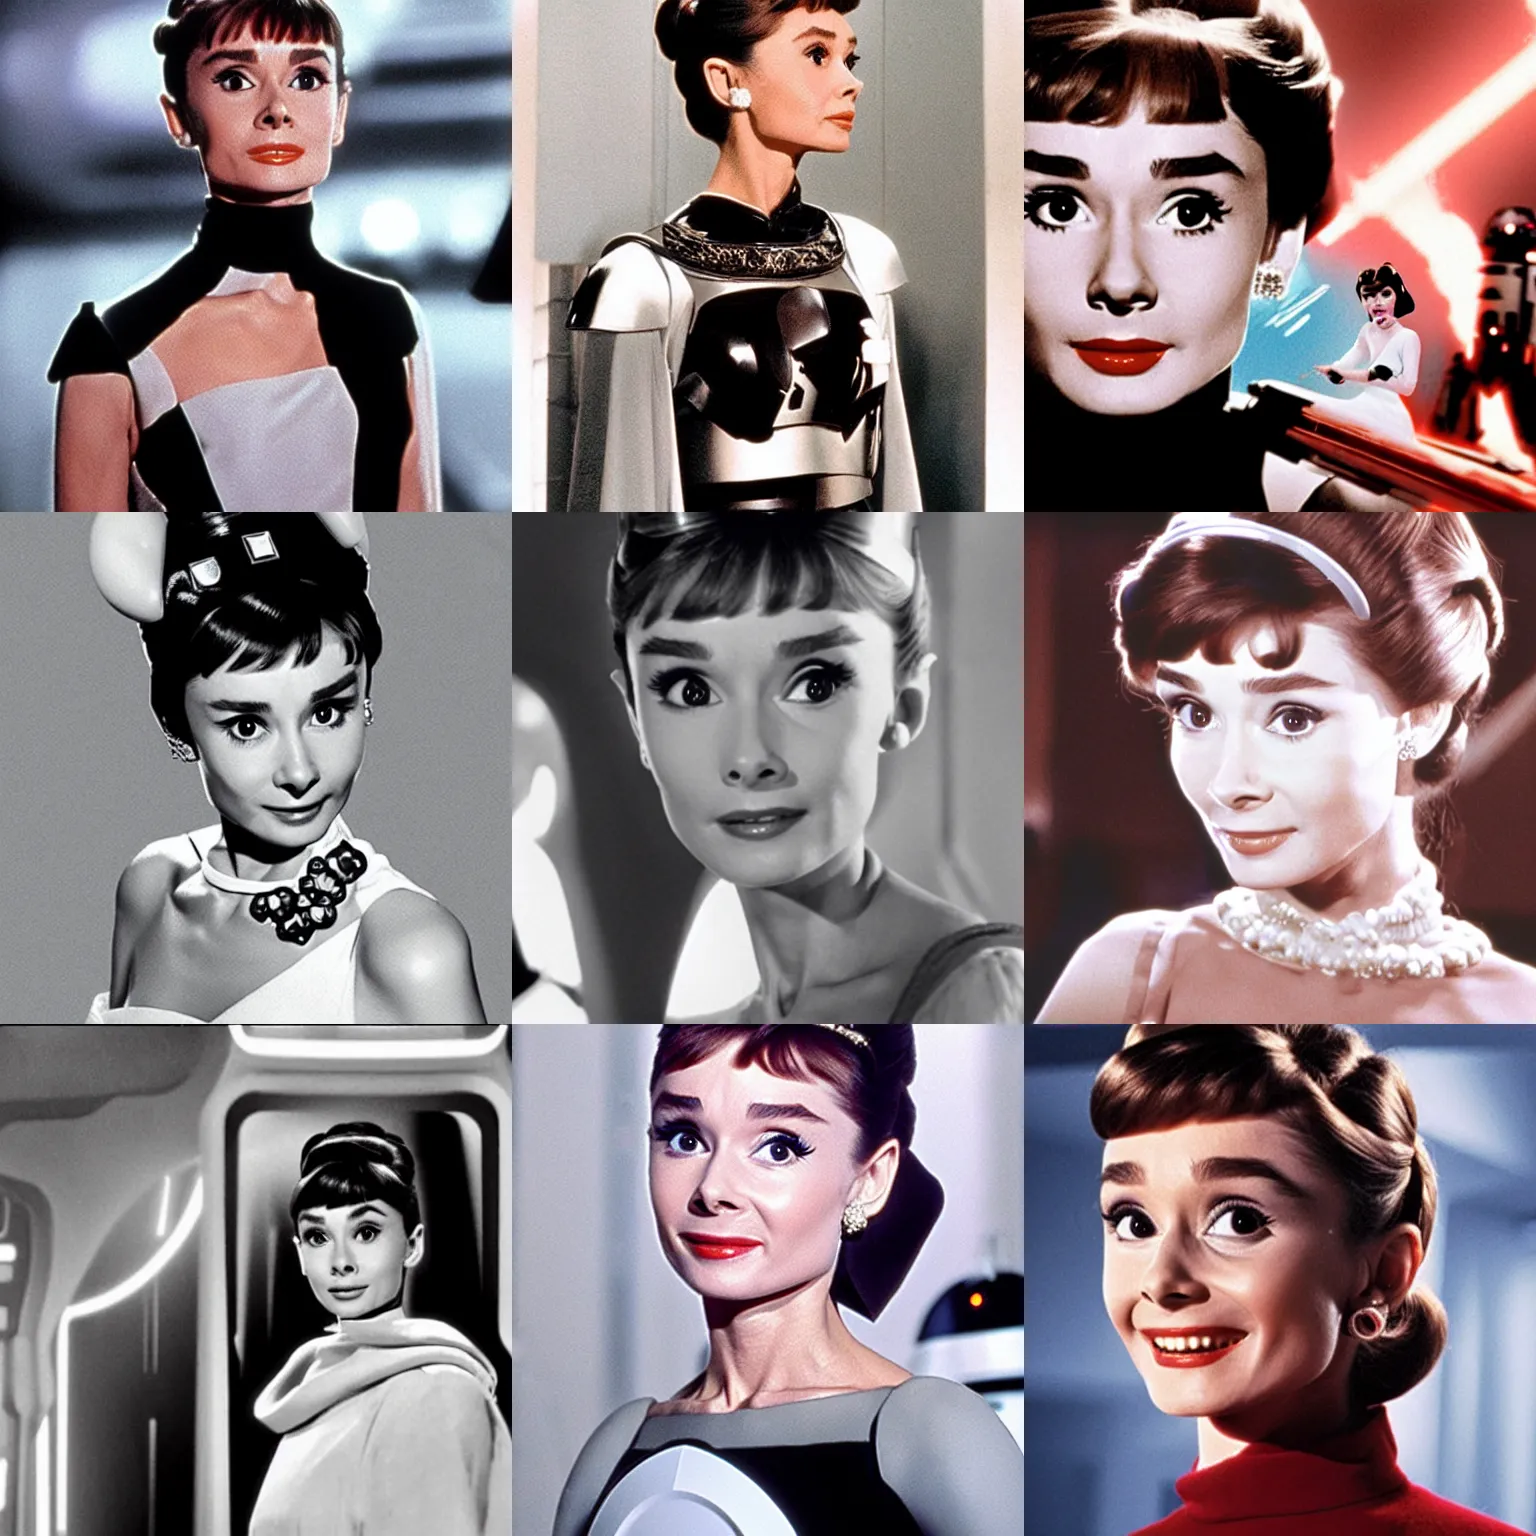 Prompt: Audrey Hepburn as Leia Princess in Star Wars movie